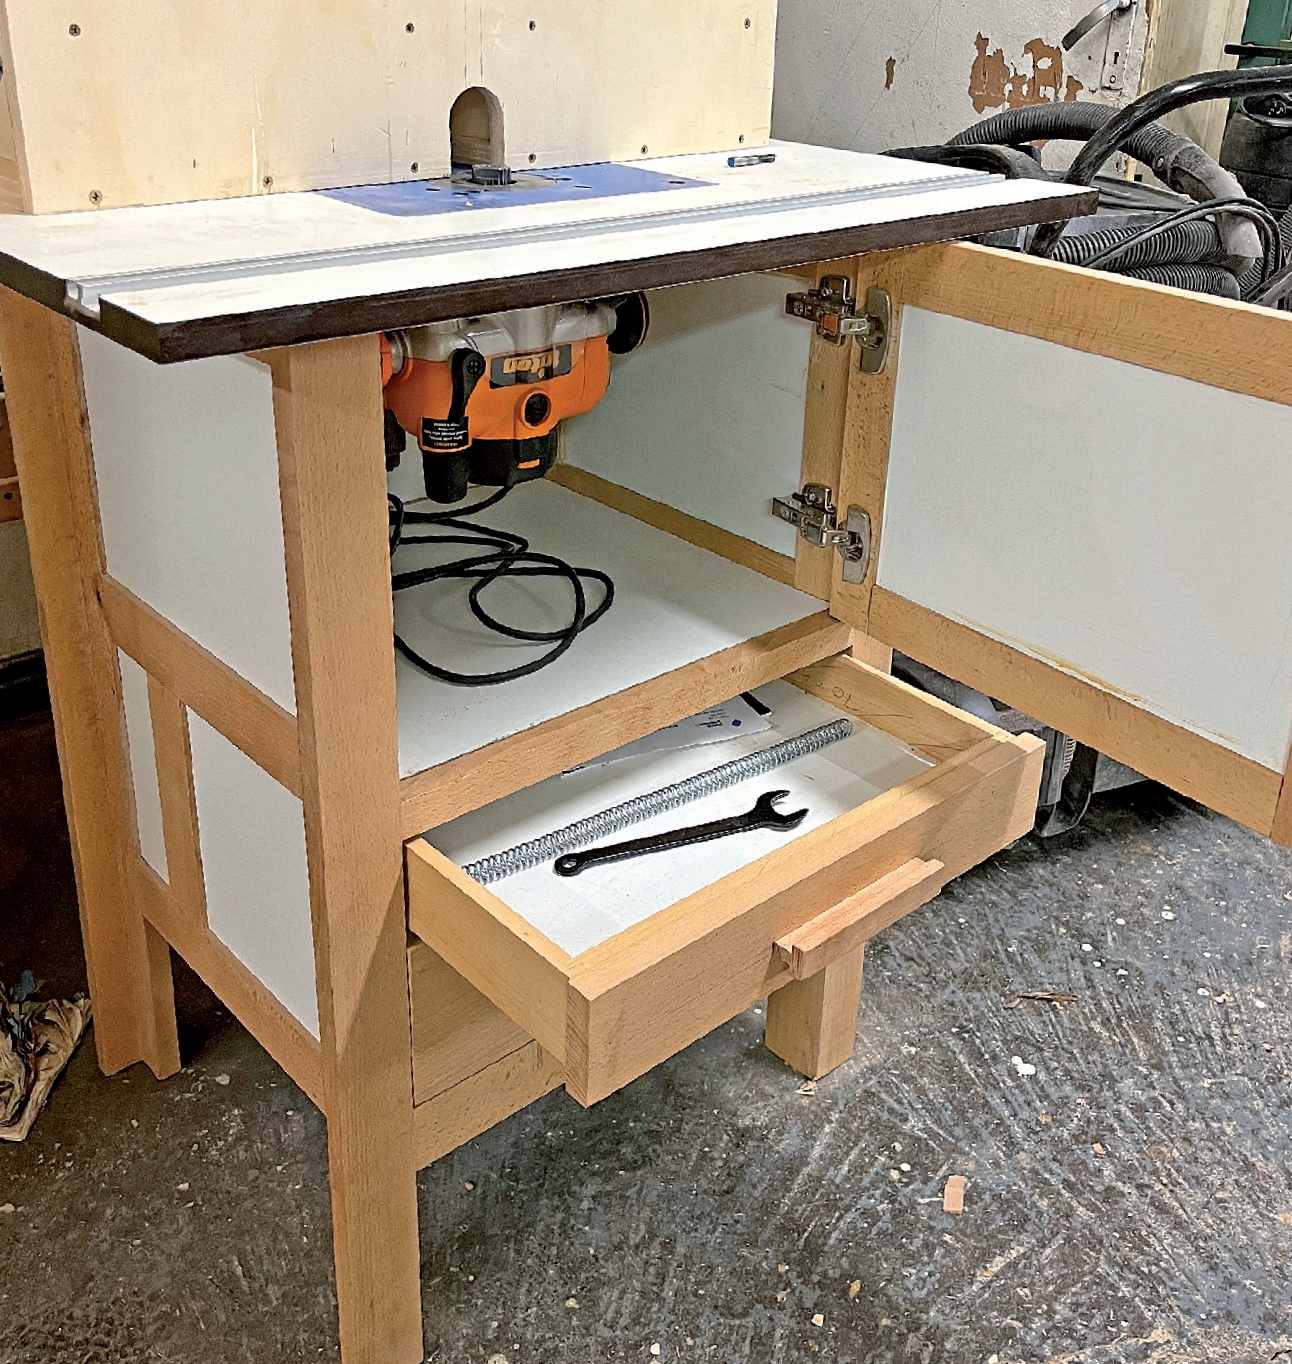 Table de défonceuse en aluminium pour bancs de travail du bois, fraiseuse  électrique du bois, table de guide (C)